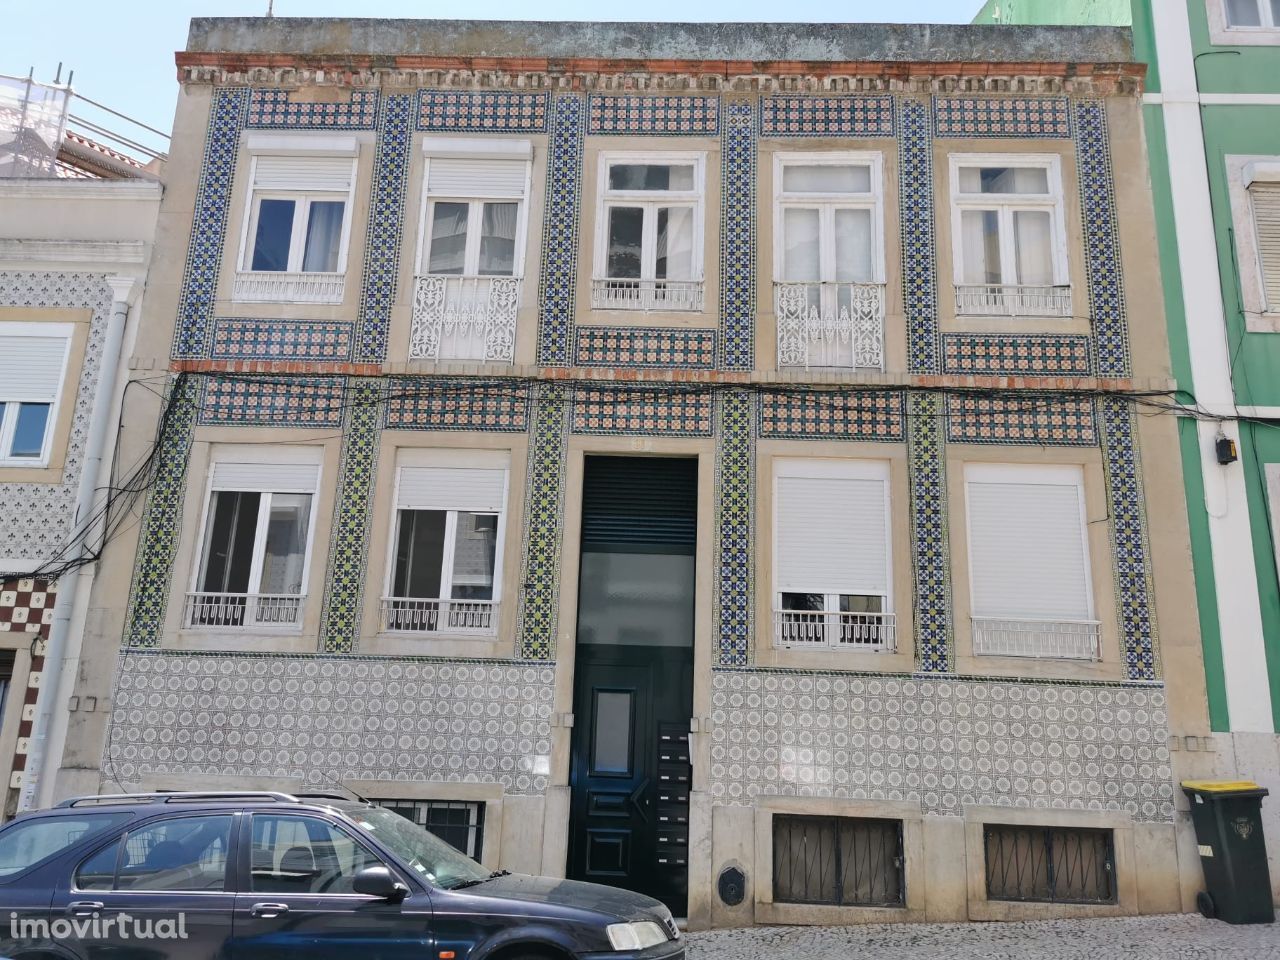 Prédio localizado perto do Instituto Superior Técnico, Lisboa